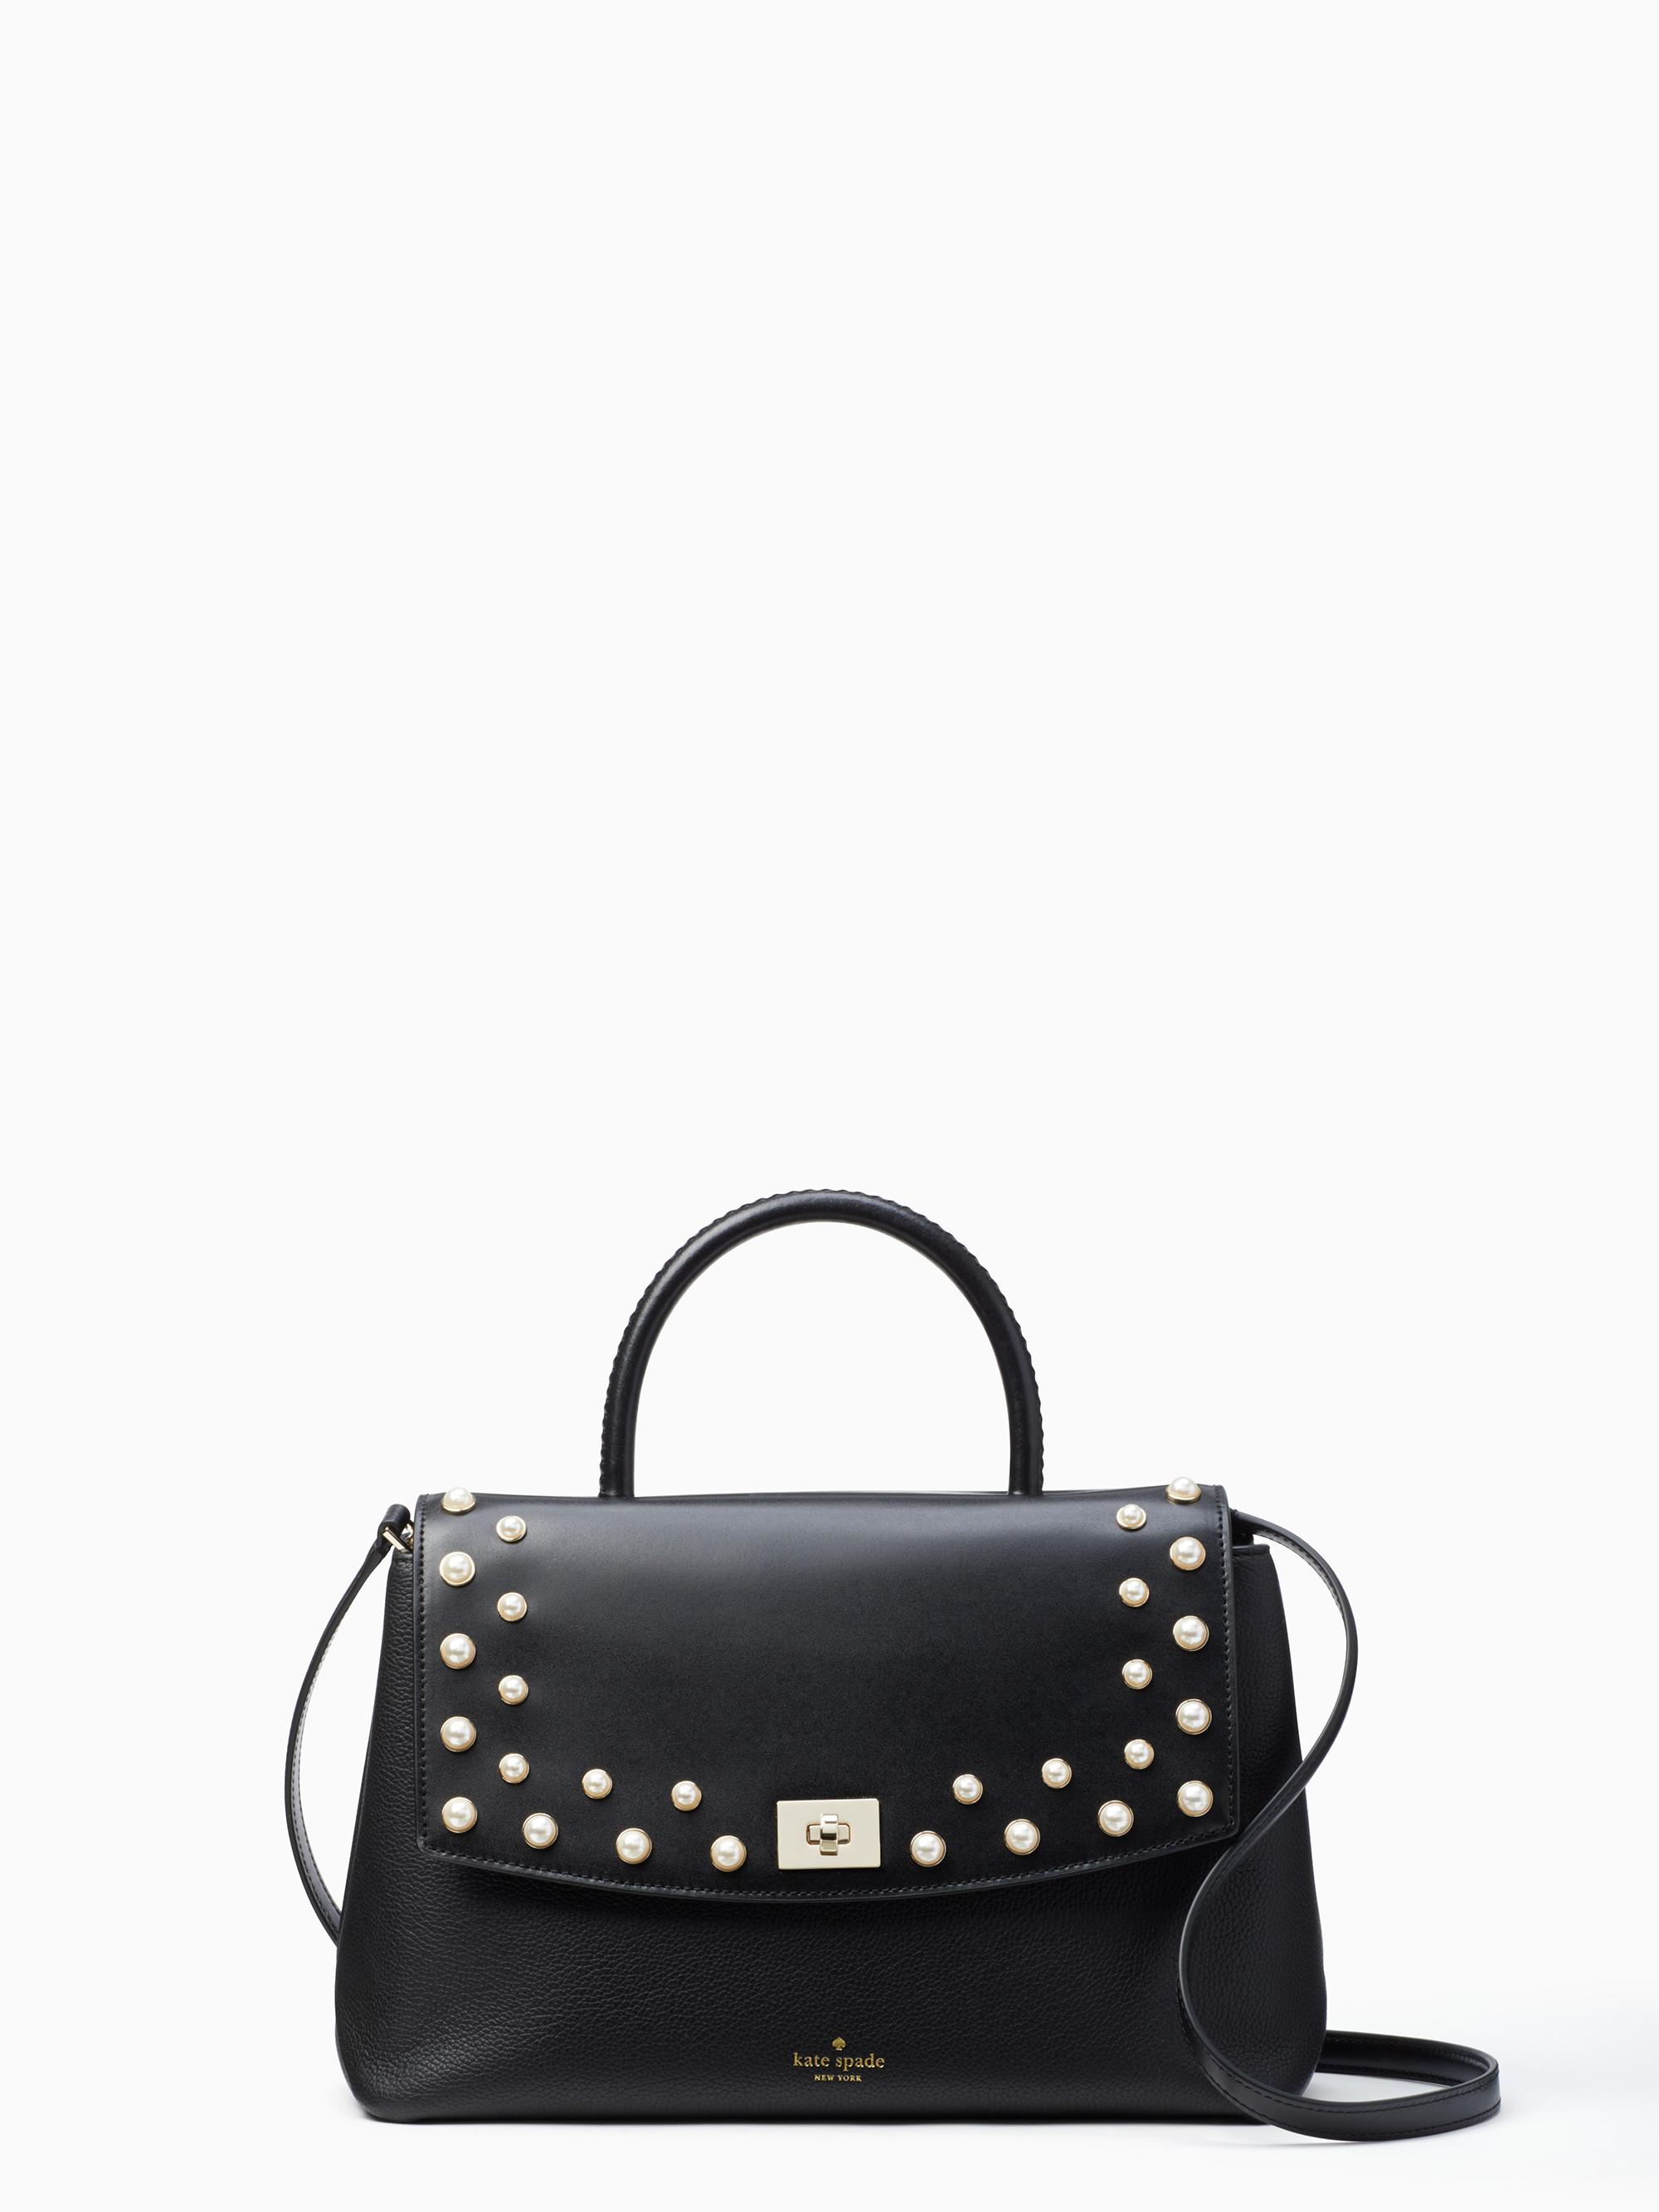 Kate Spade Black Bag With Pearls Top Sellers, SAVE 32% 